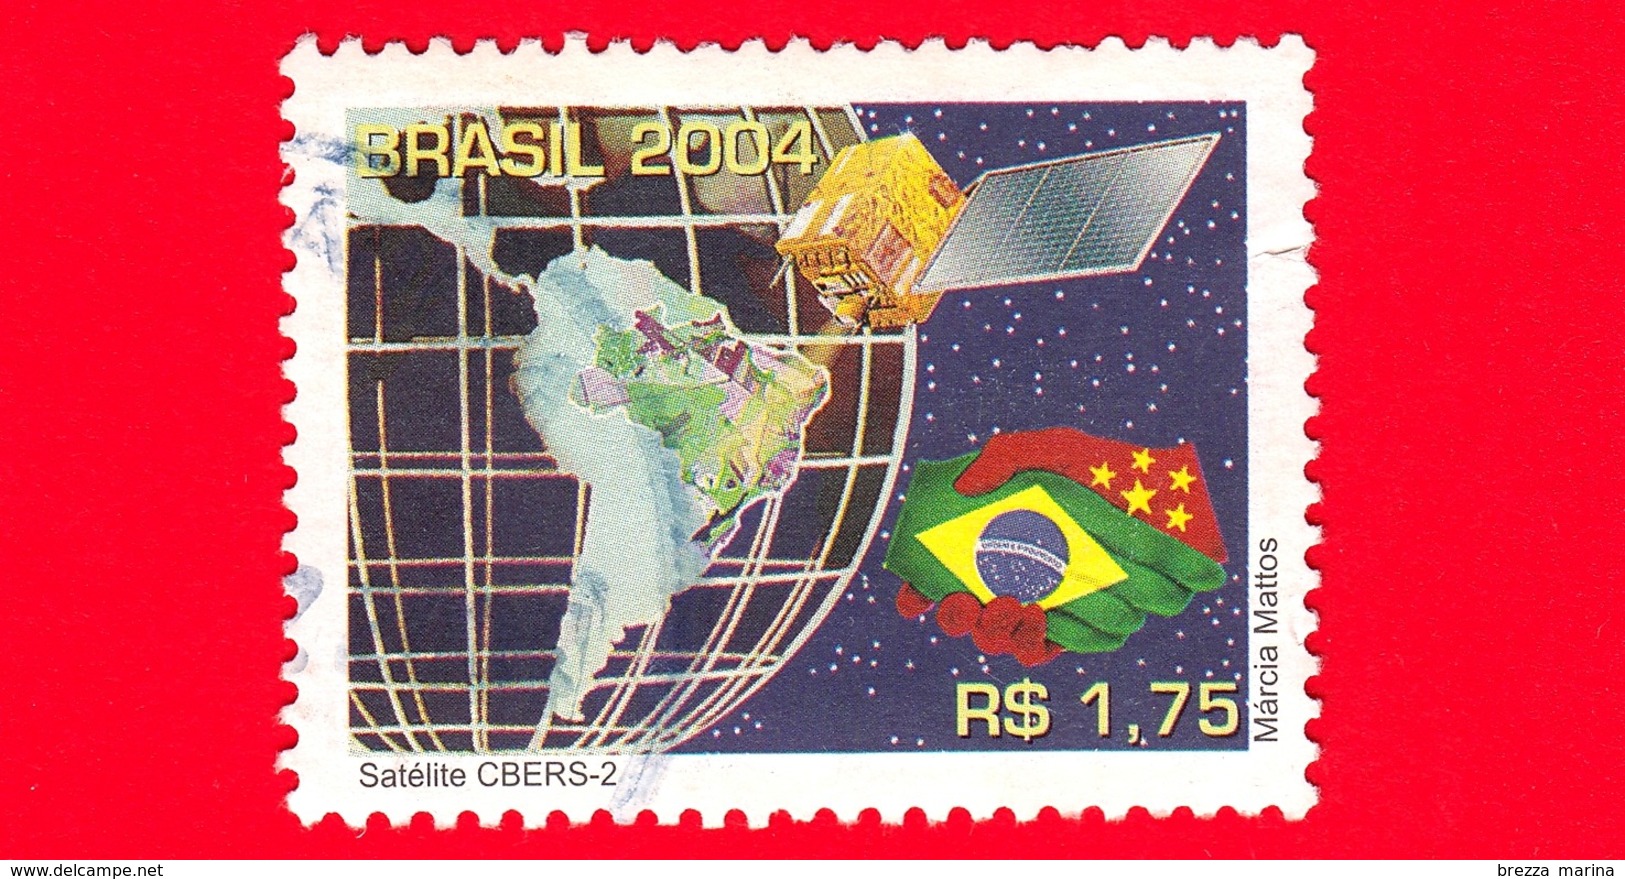 BRASILE - Usato - 2004 - CBERS-2 Satellite - 1.75 - Gebruikt